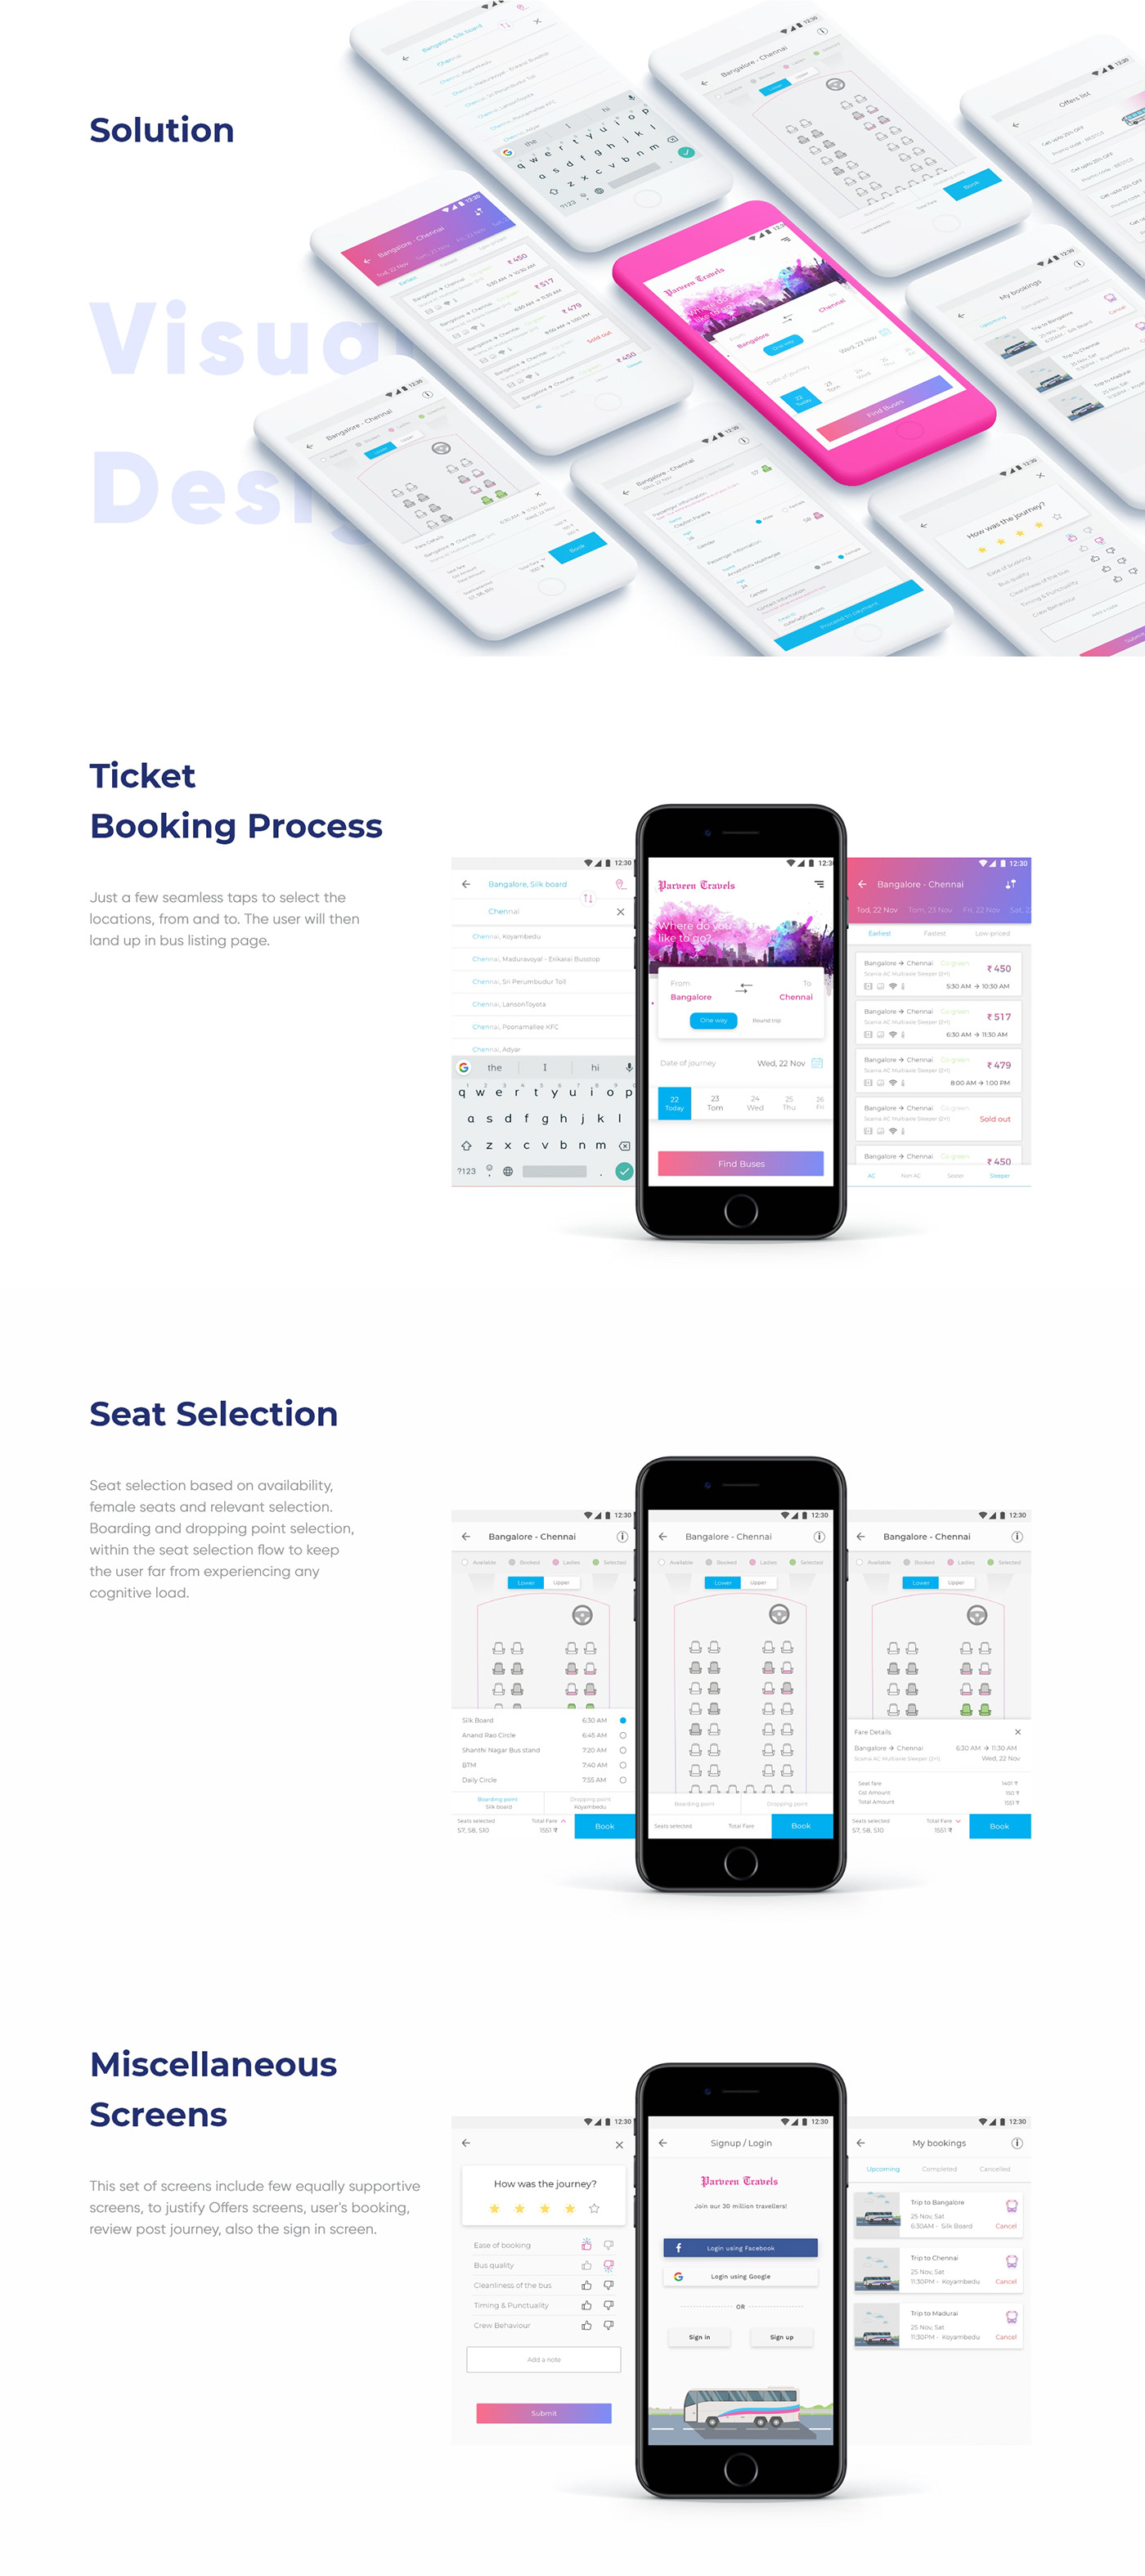 bus ticket Travel ui design UX design Case Study Bus Booking Travel App app design team